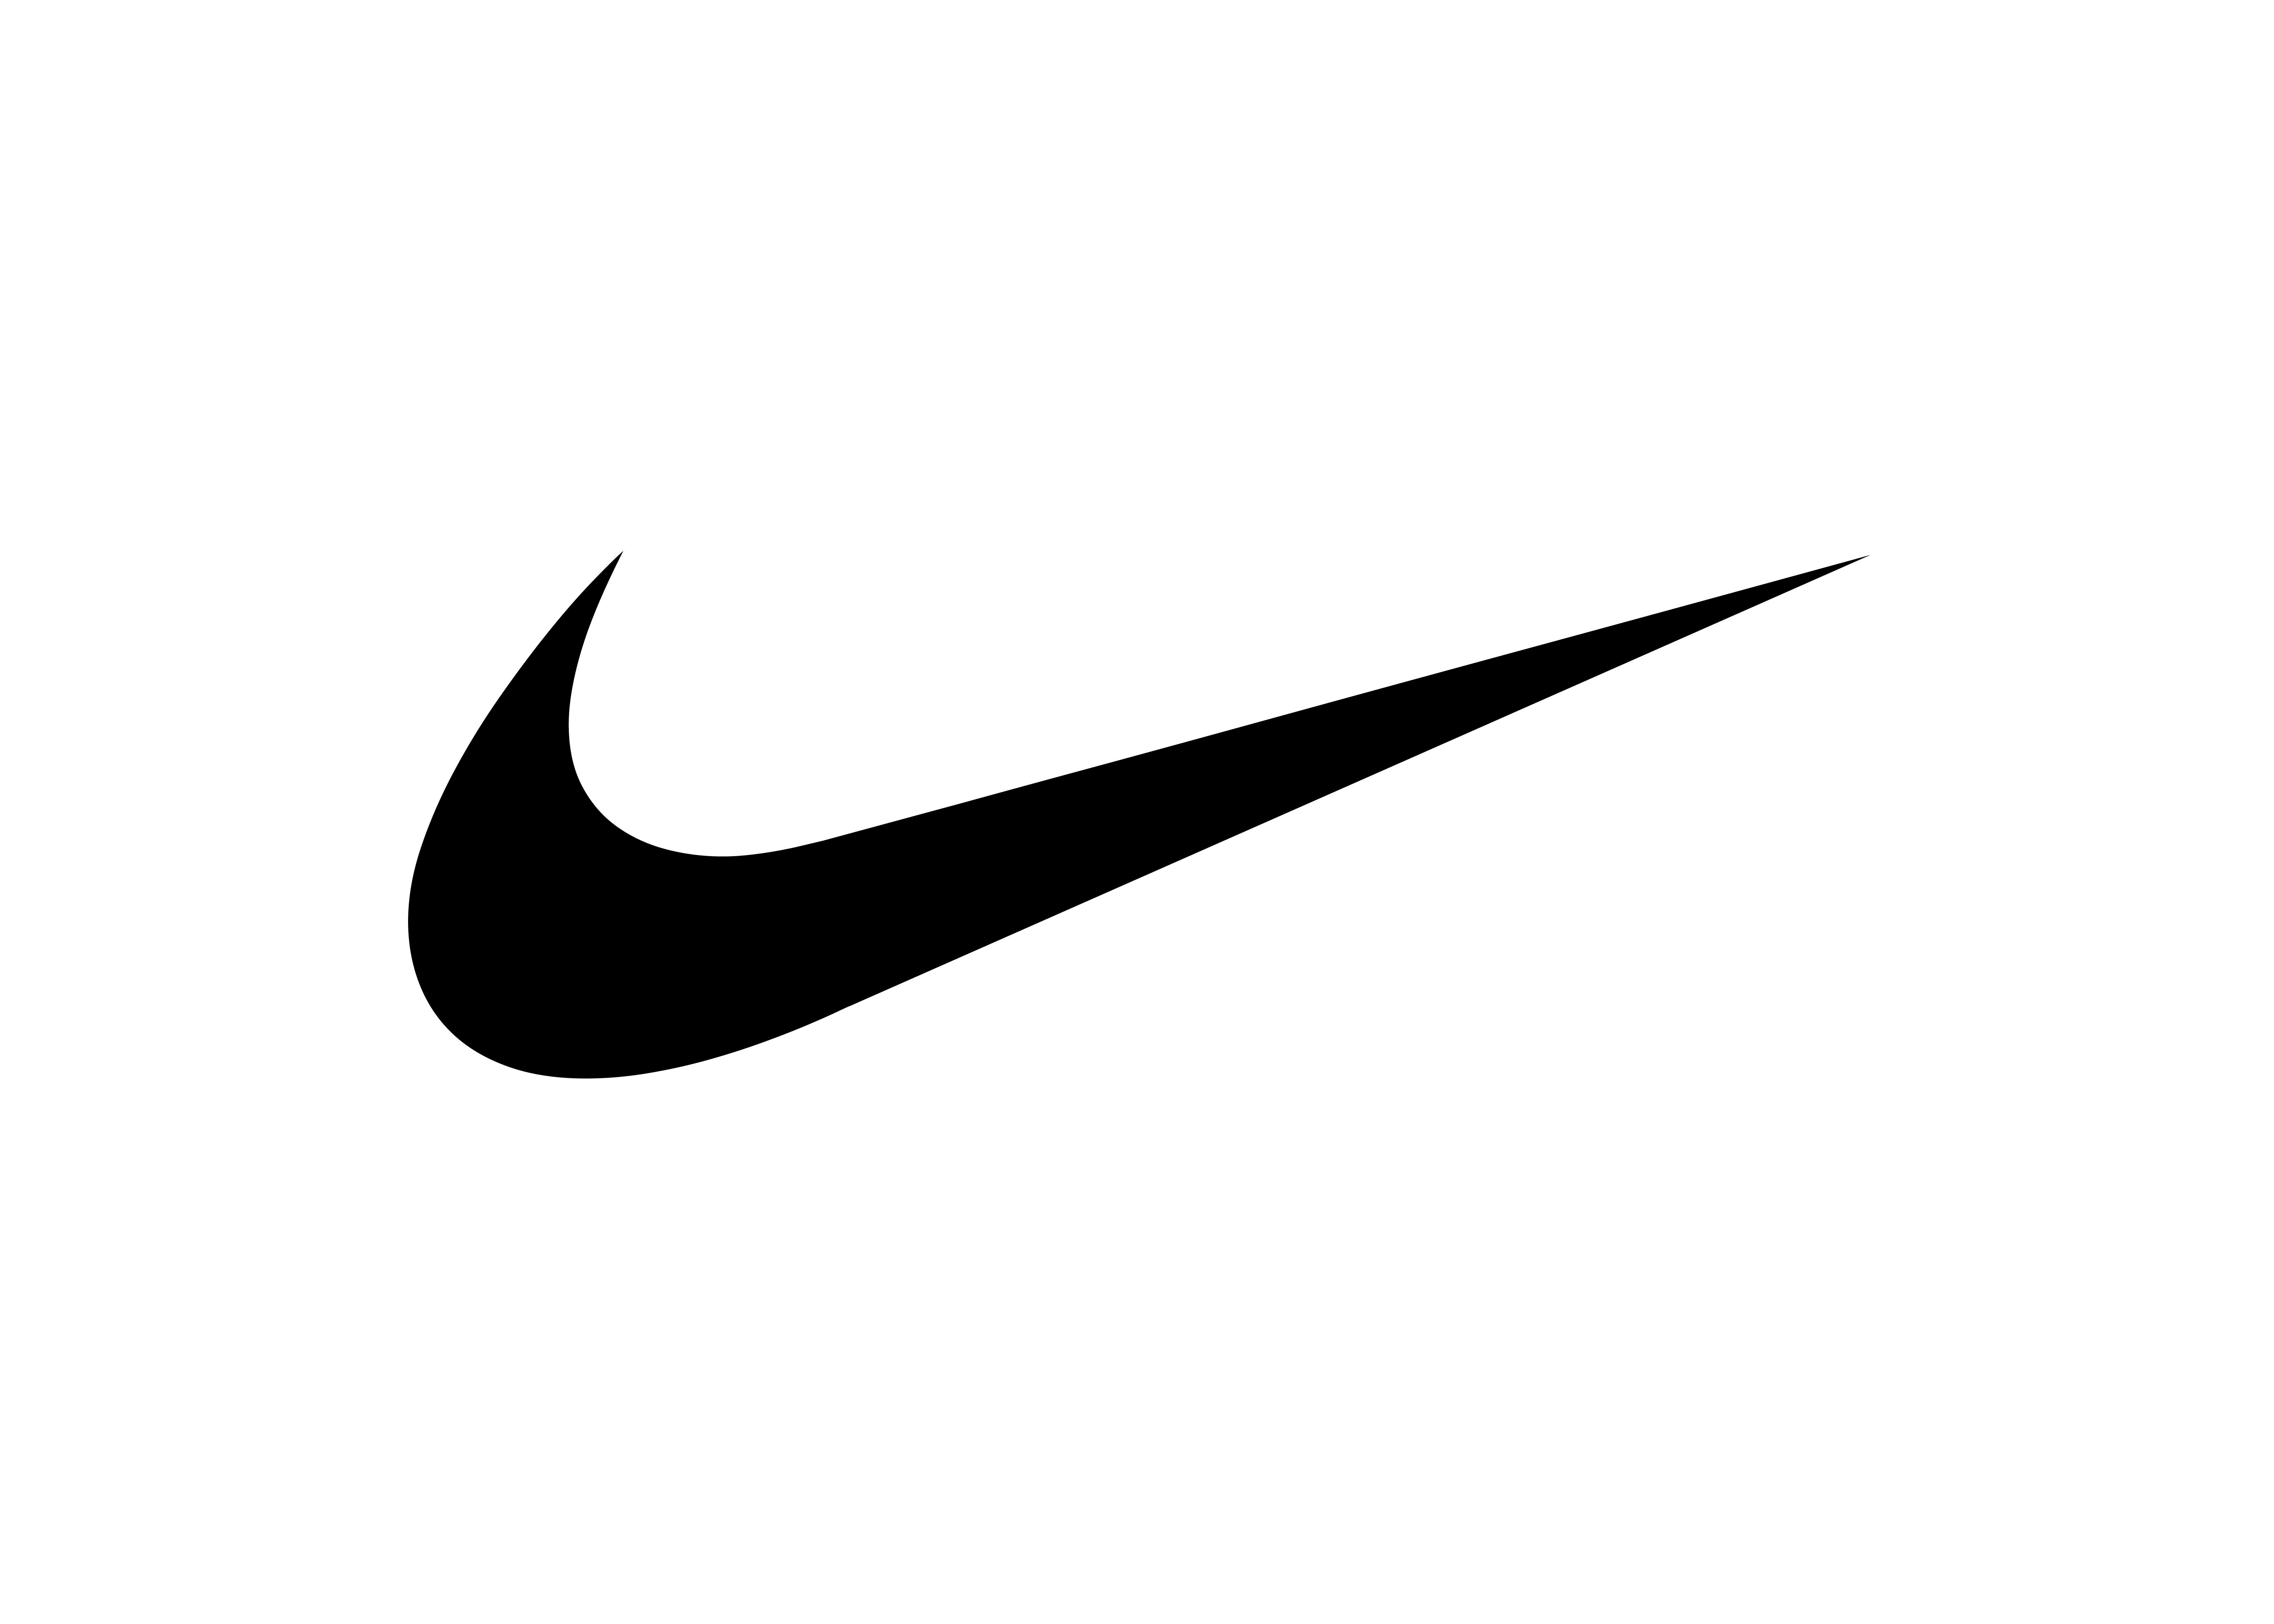 Camo Nike Logo - Nike Blazer Mid PRM “Camo Swoosh”